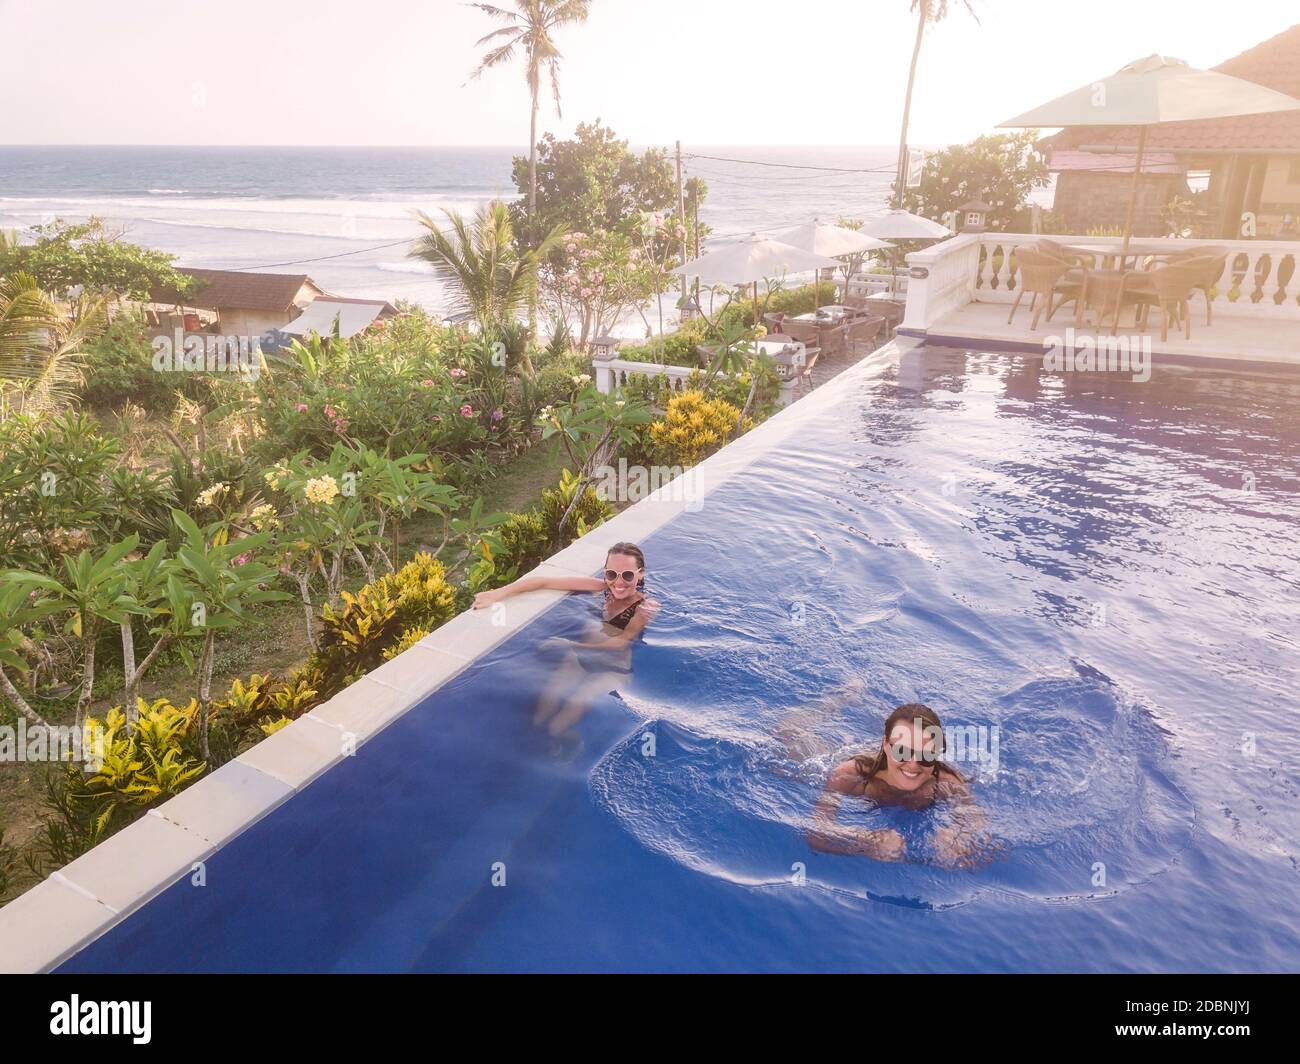 Two women in swimming pool in hotel, Balian, Bali, Indonesia Stock Photo